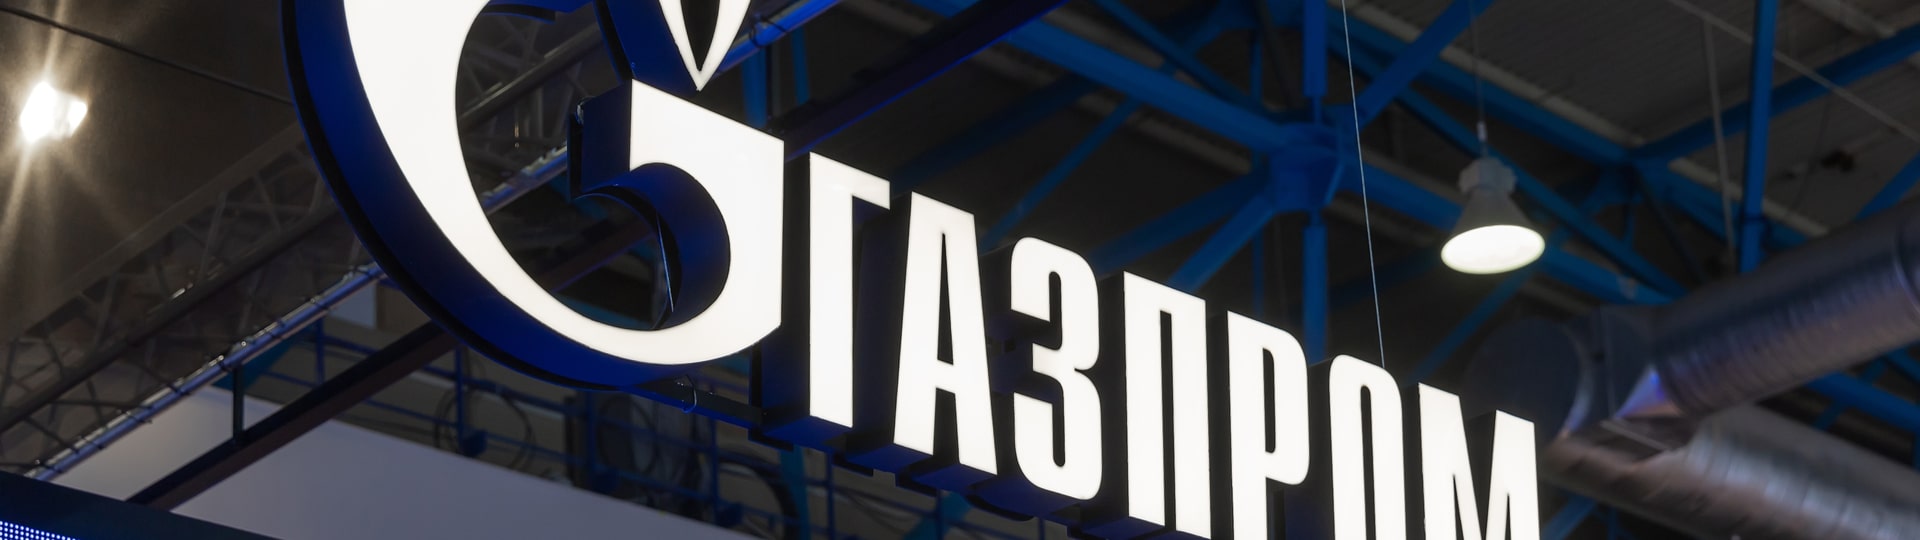 Gazprom zvýšil zisk na rekordních 2,09 bilionu rublů